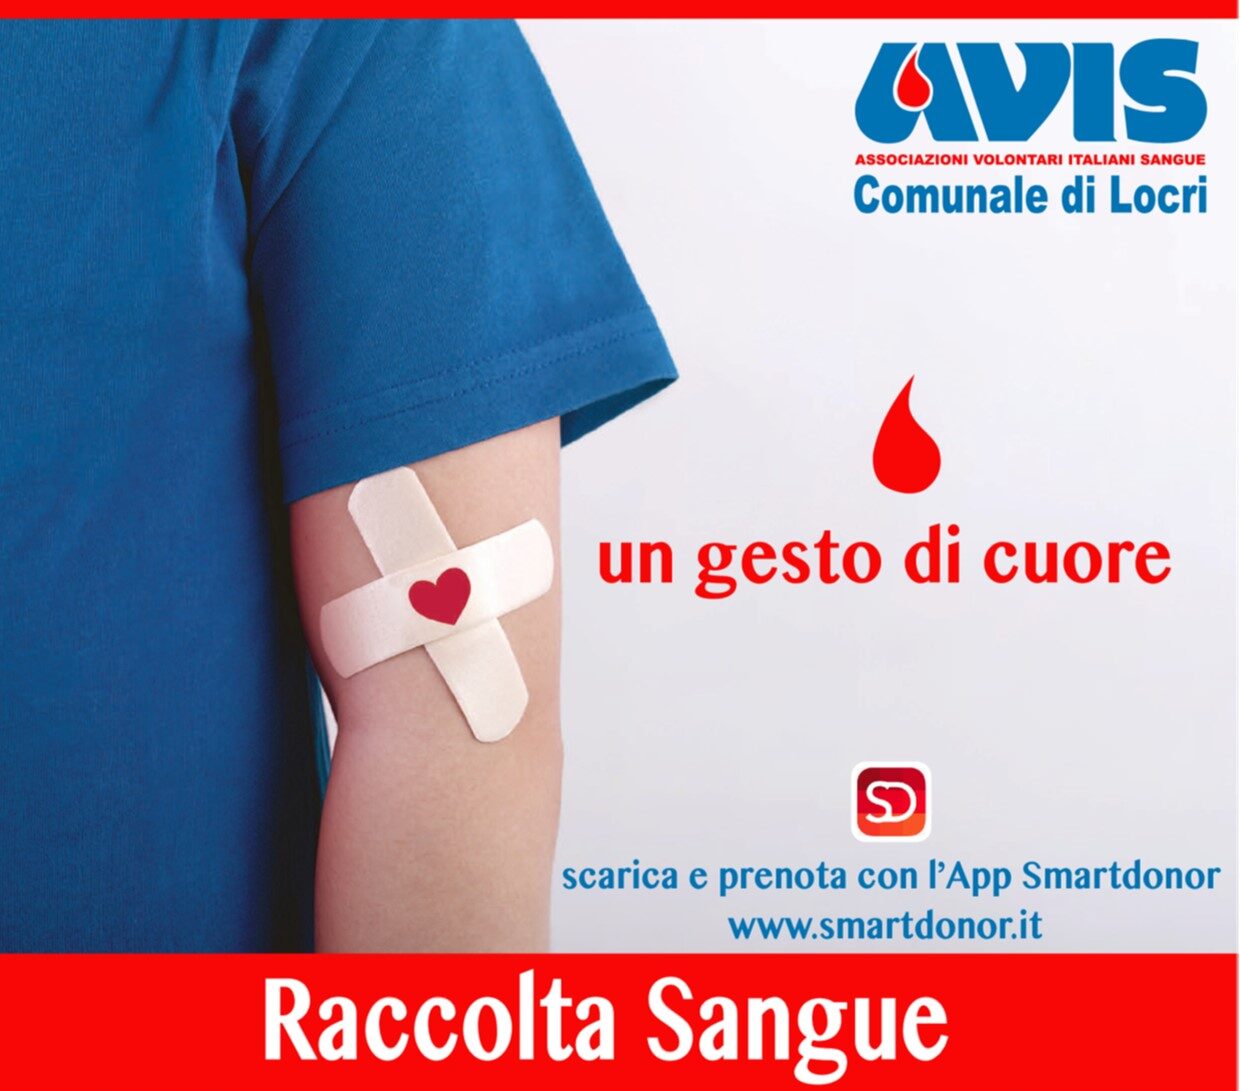 L’AVIS Comunale di Locri comunica le date delle raccolte di sangue per il mese di febbraio 2022